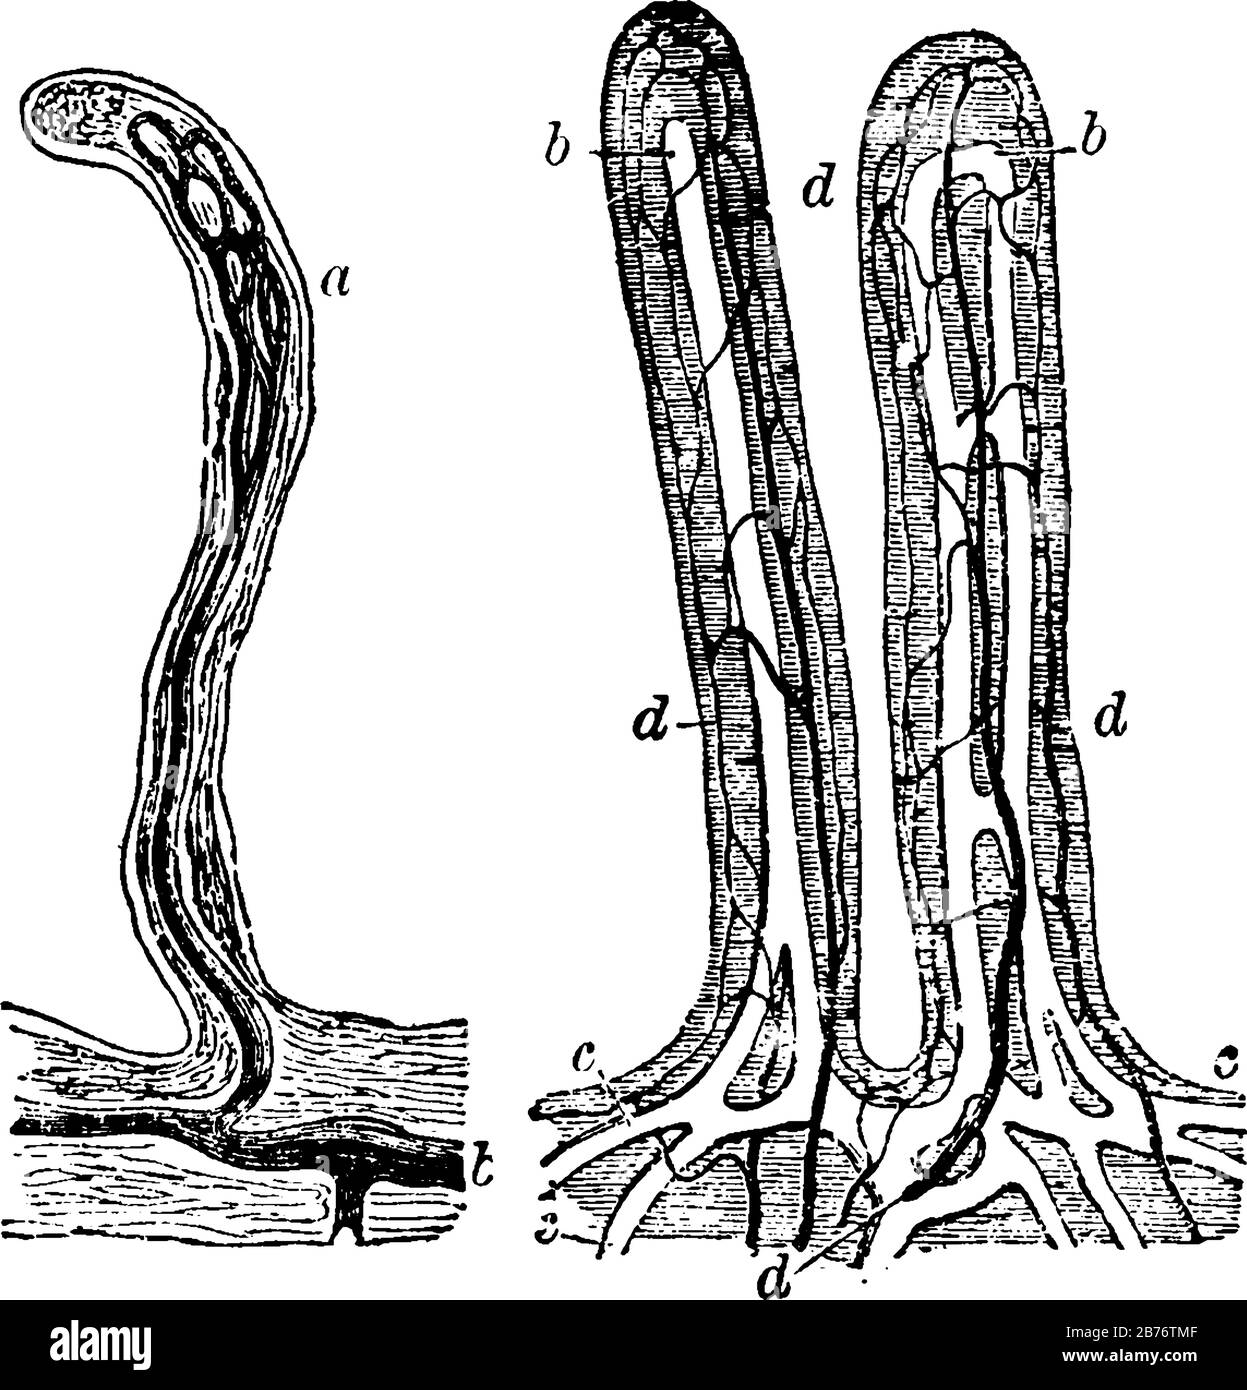 Villi dell'intestino tenue; ingrandito circa 80 diametri, linea vintage disegno o incisione Illustrazione Vettoriale